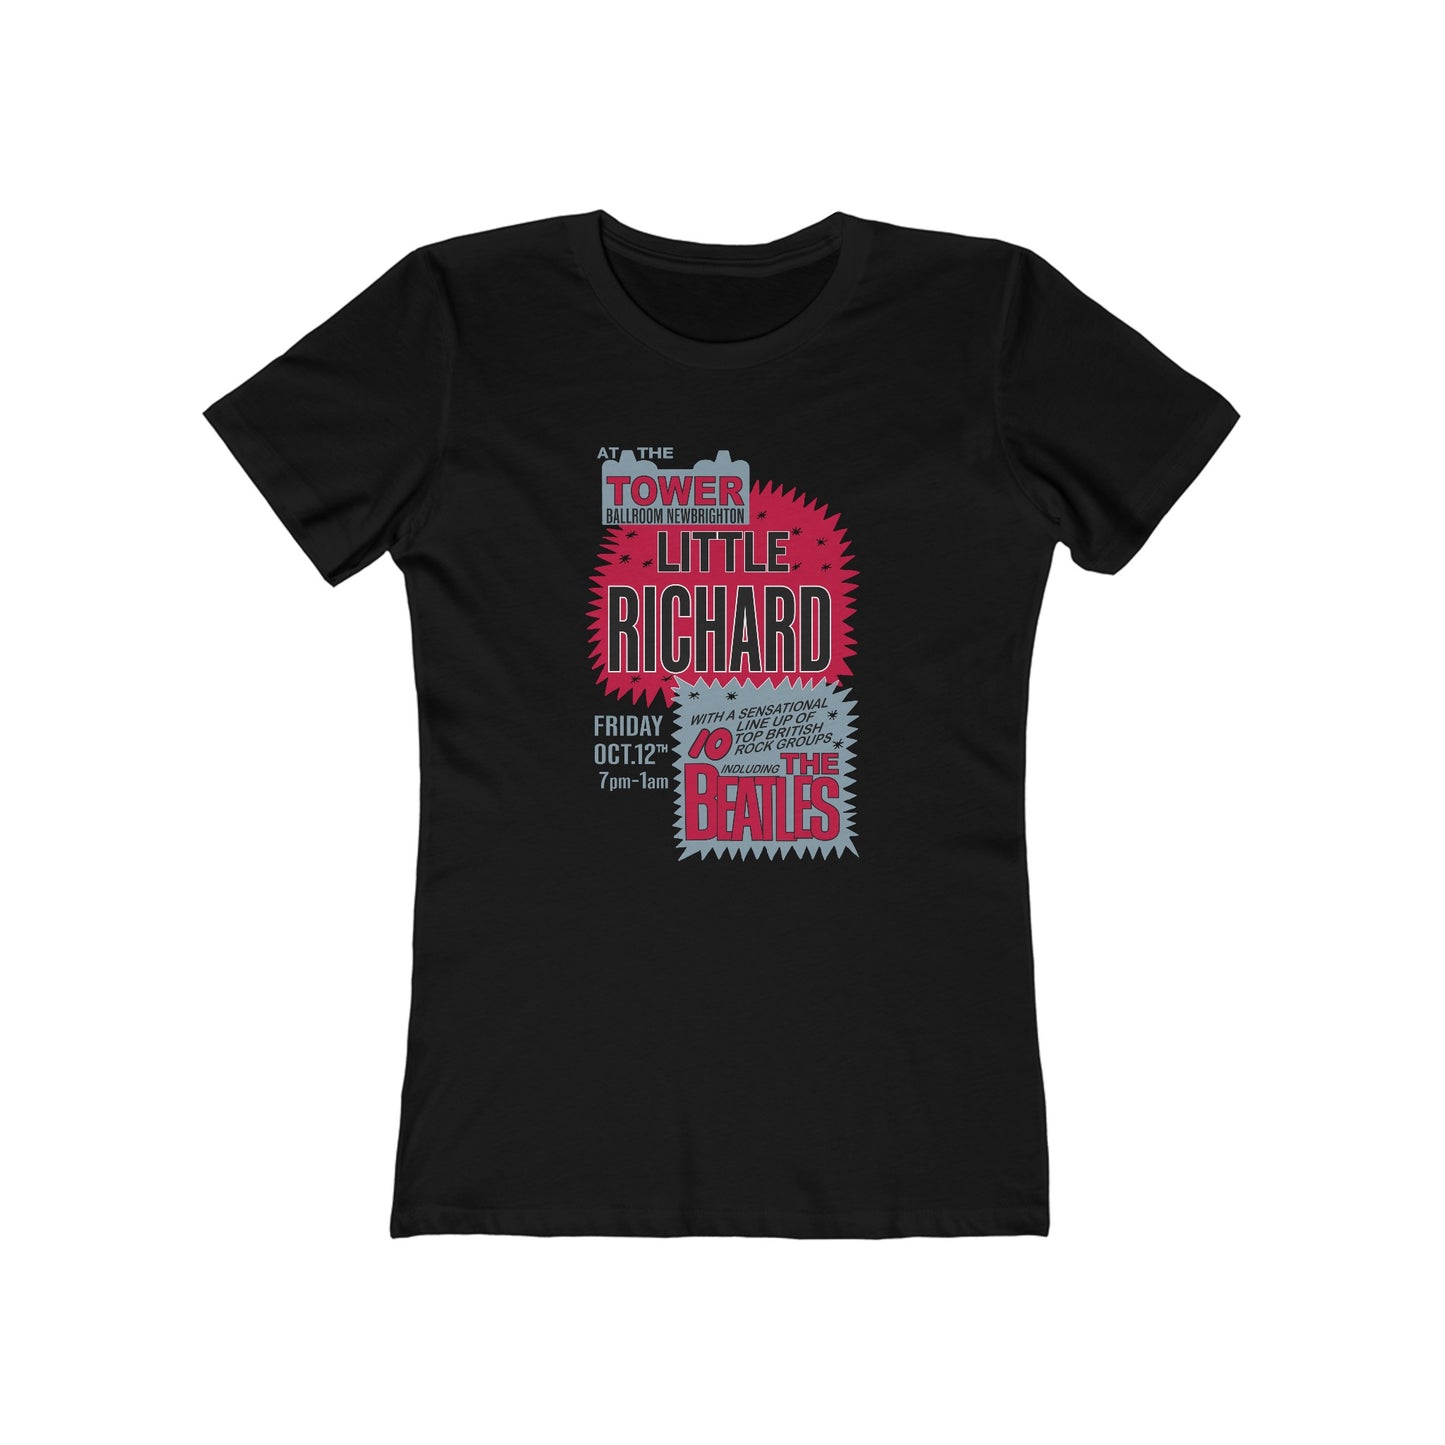 Little Richard & The Beatles - Women's T-Shirt